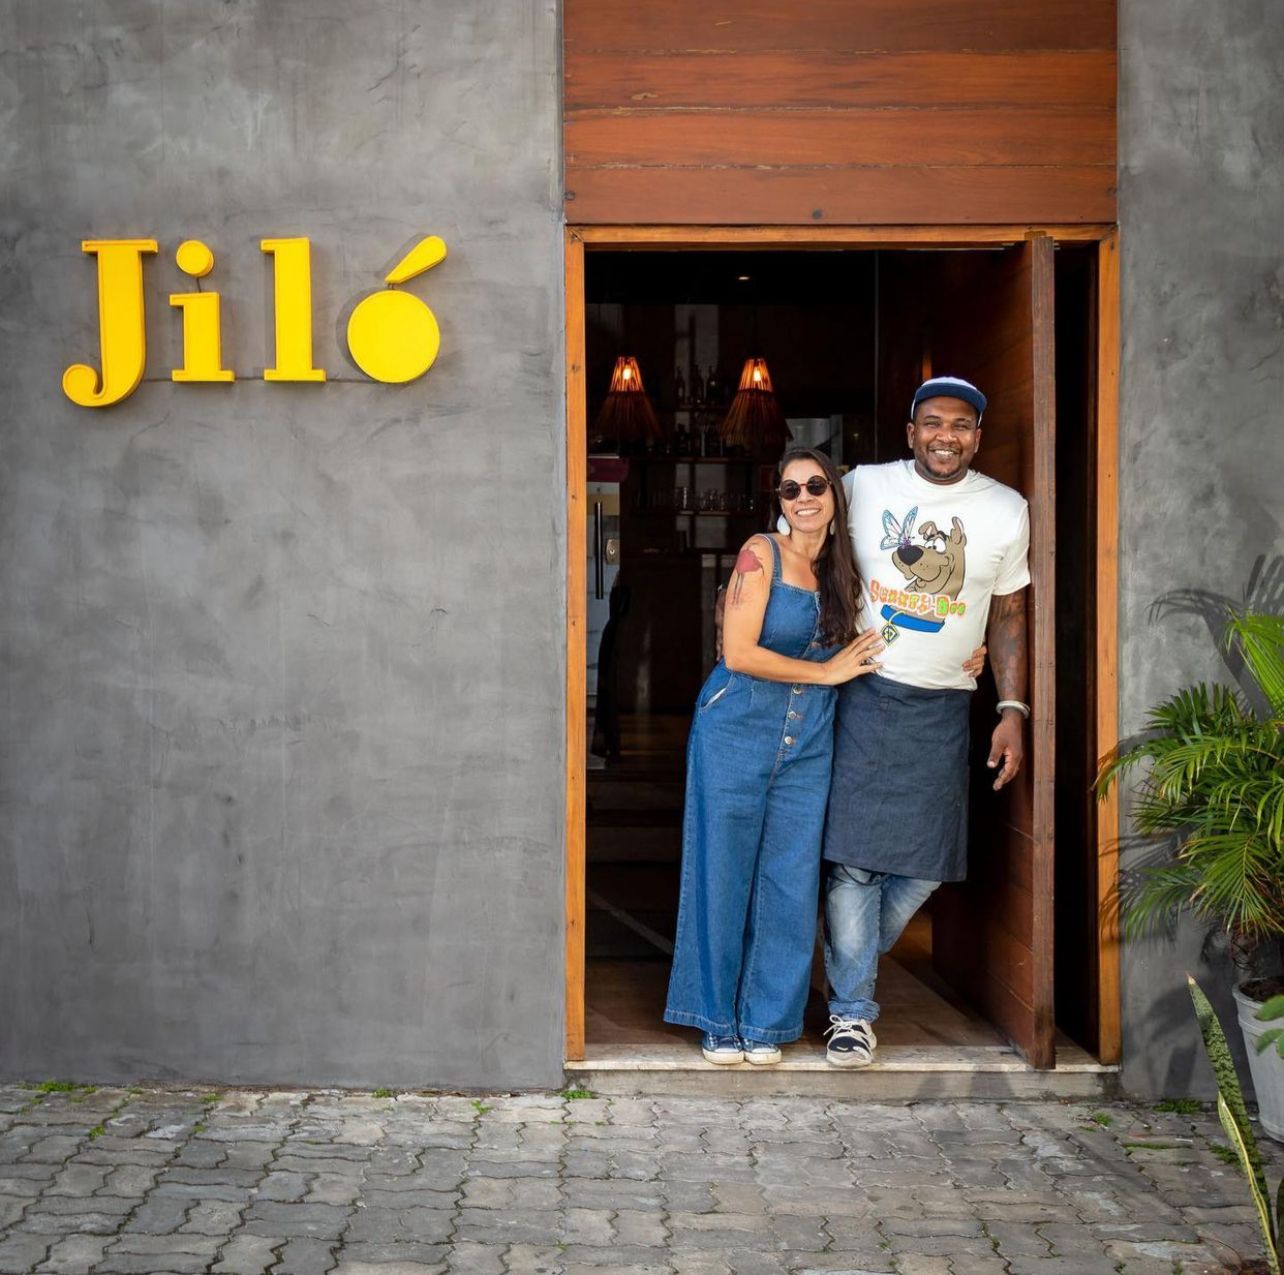 Sucesso em Itacaré, Jiló Restaurante expande atuação e abre unidade em Salvador 